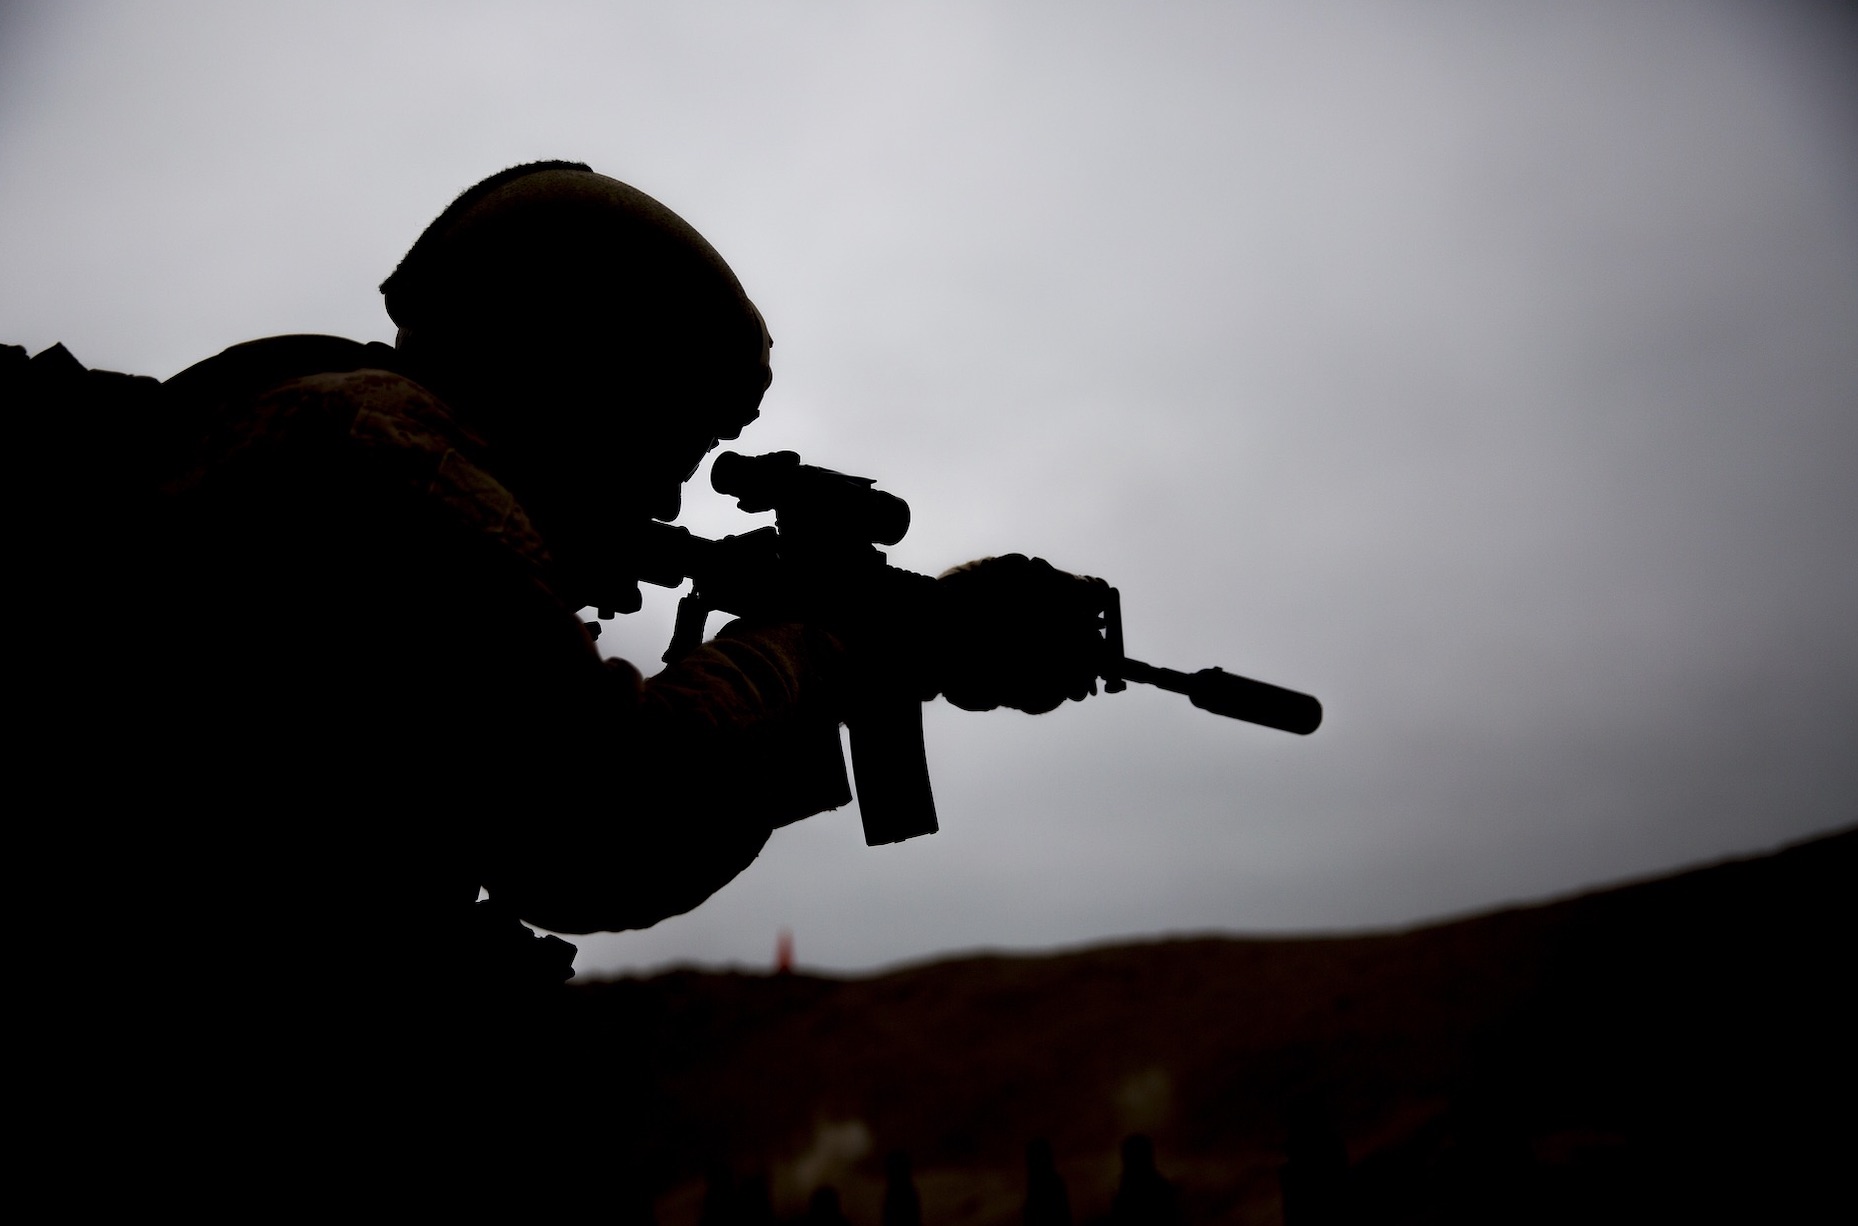 Askerleri İtaatsizliğe Teşvik Suçu Hakkında Genel Bilgiler